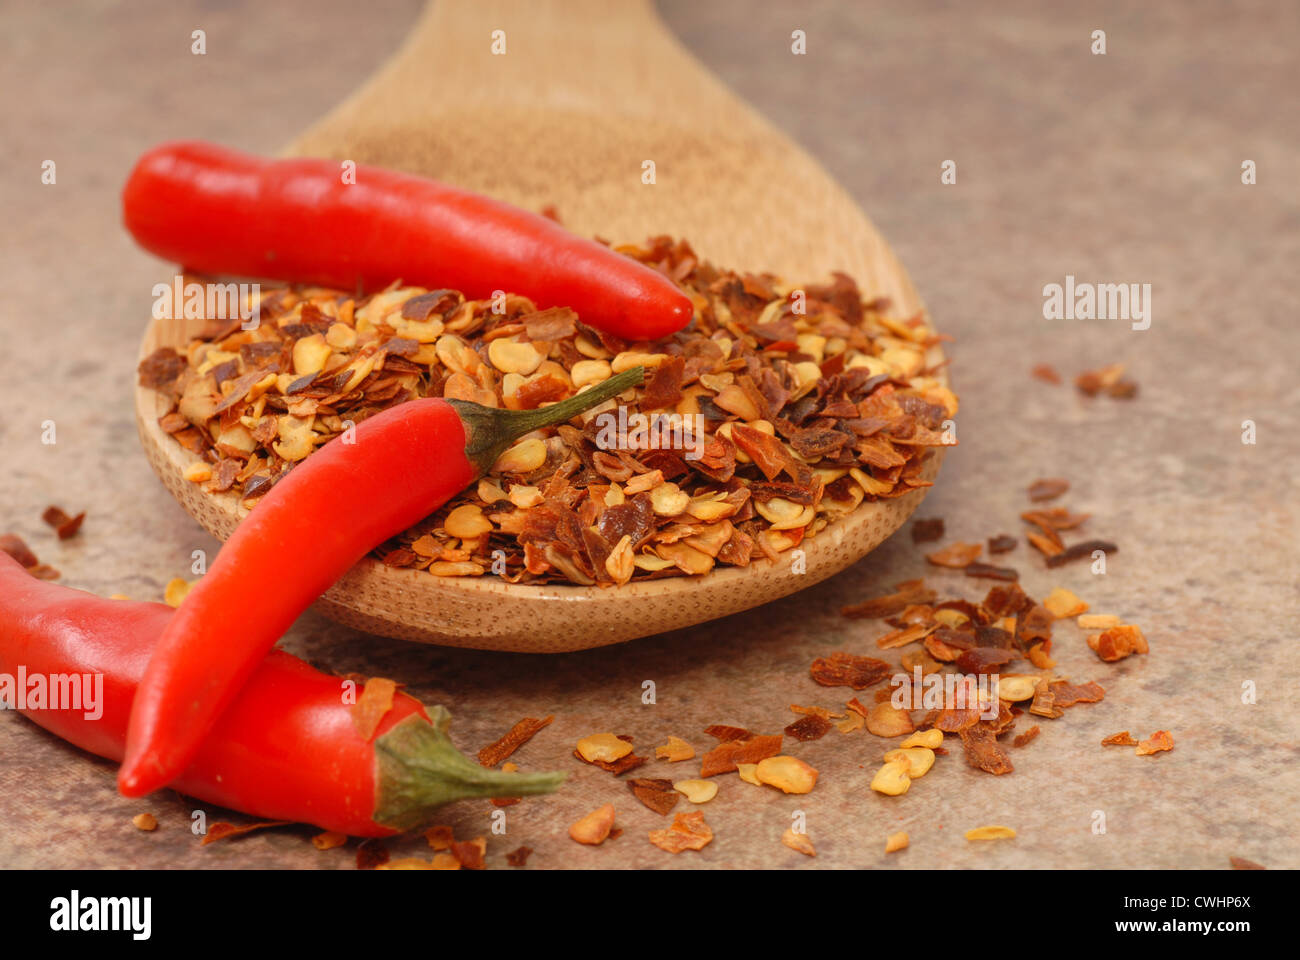 Red Hot Chili Peppers e peperoncino rosso su un cucchiaio di legno Foto Stock